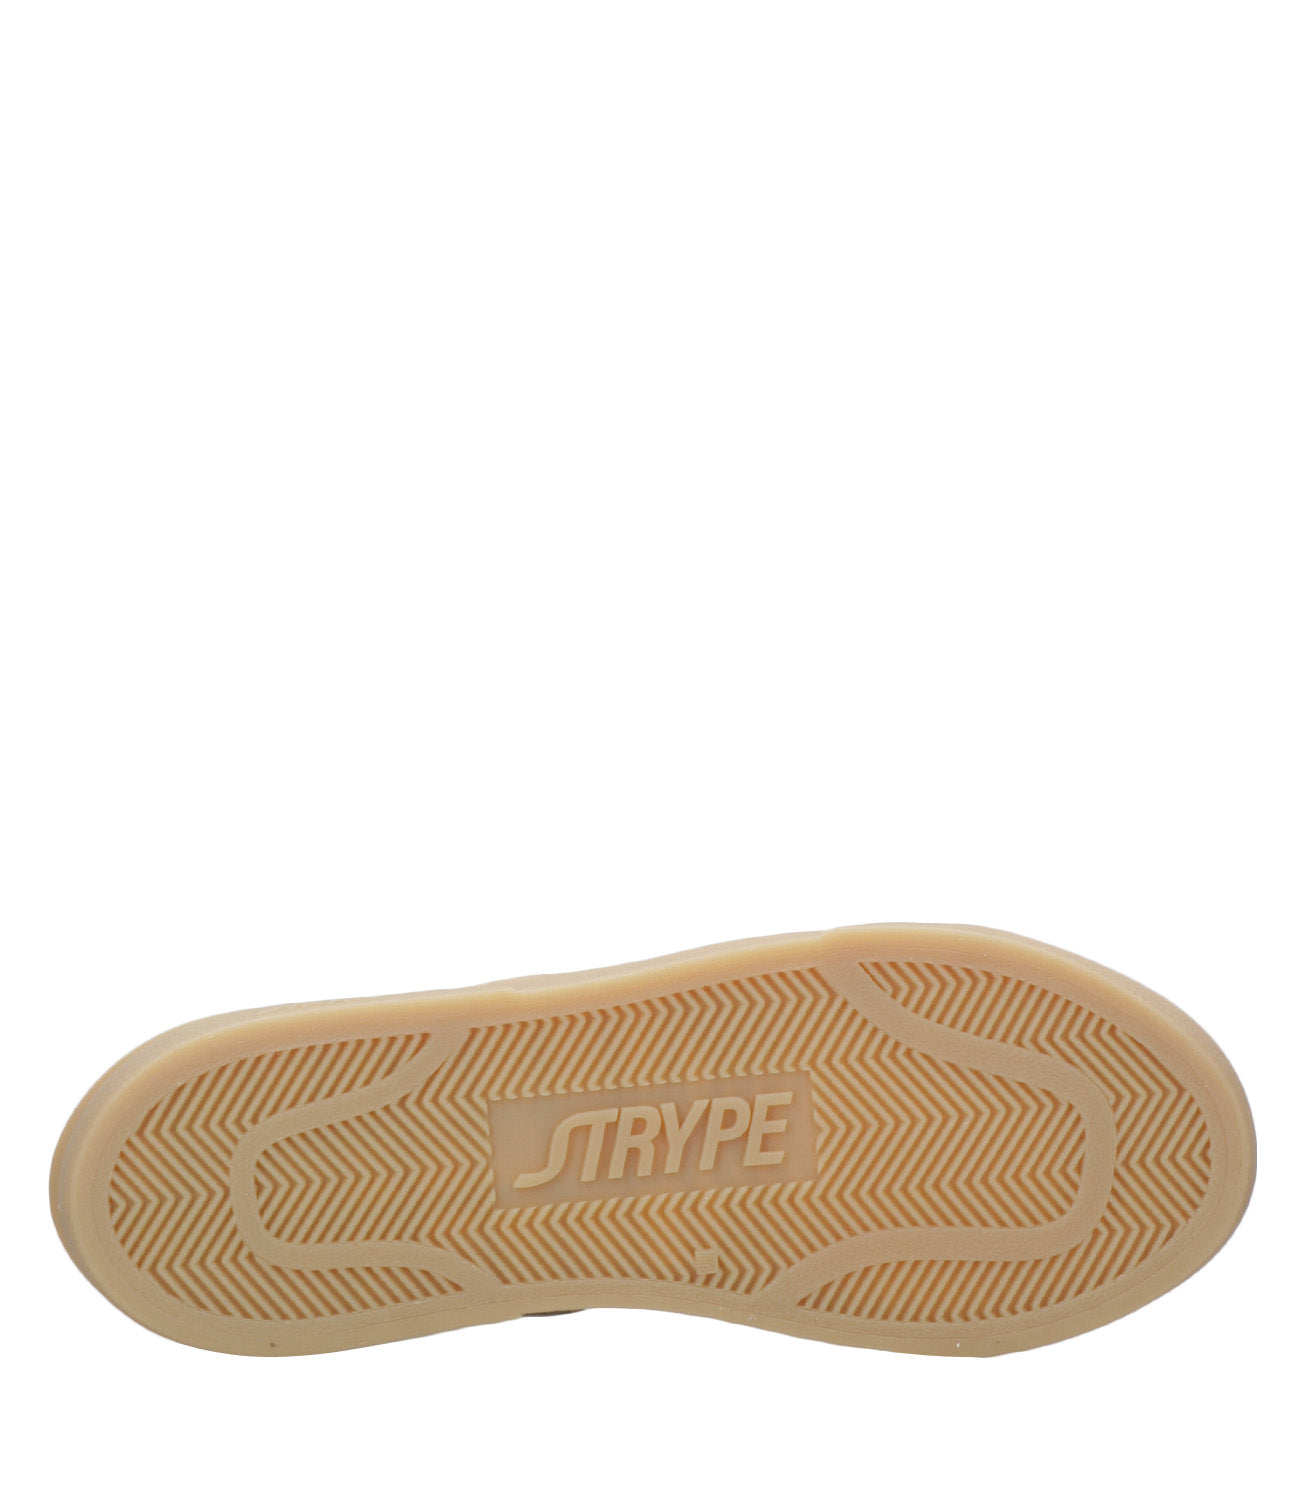 Strype | Sneakers Basket Low Beige